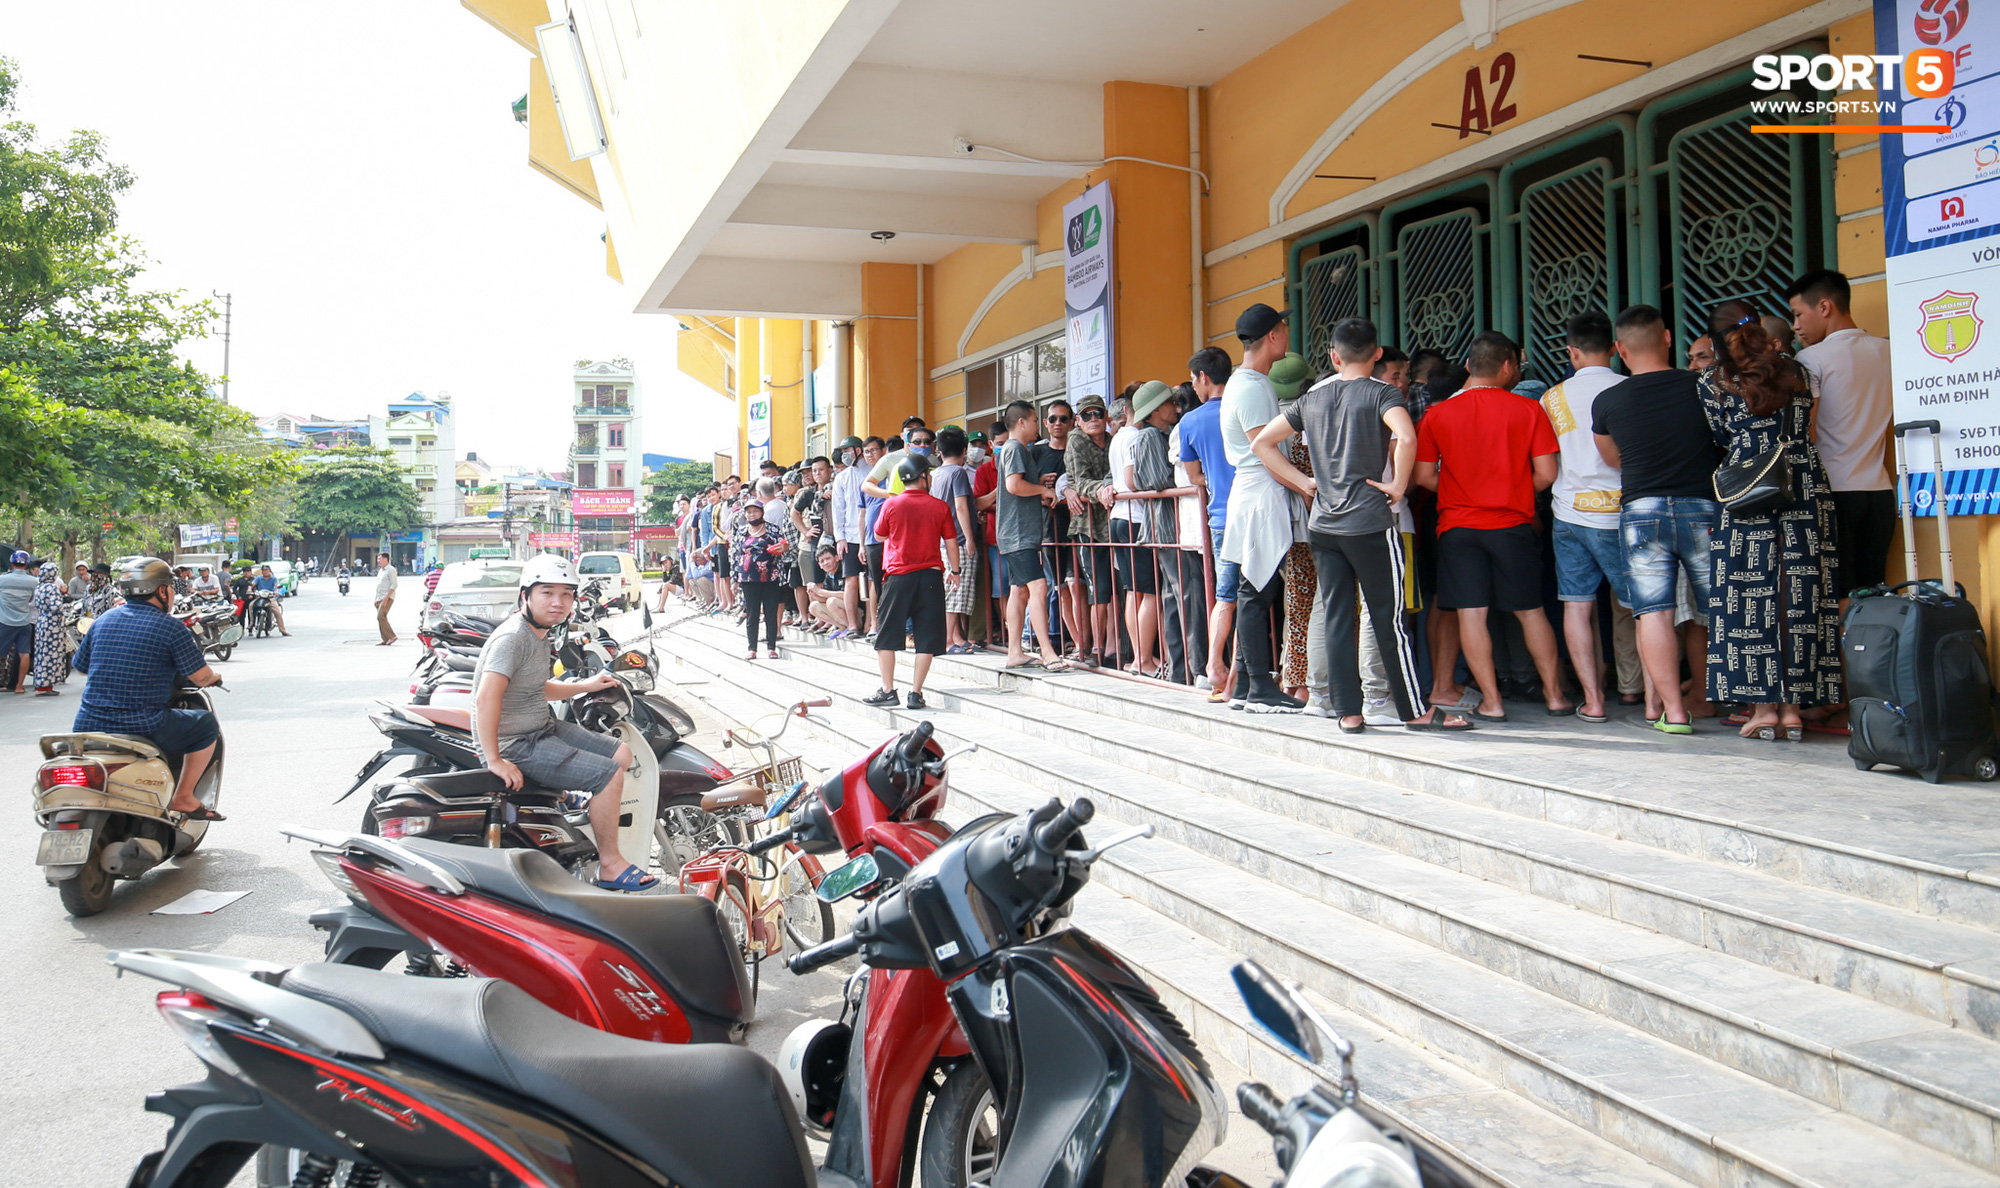 Chen nhau nghẹt thở mua vé xem bóng đá ở Nam Định, dân phe Hà Nội cũng đổ về thu gom - Ảnh 9.